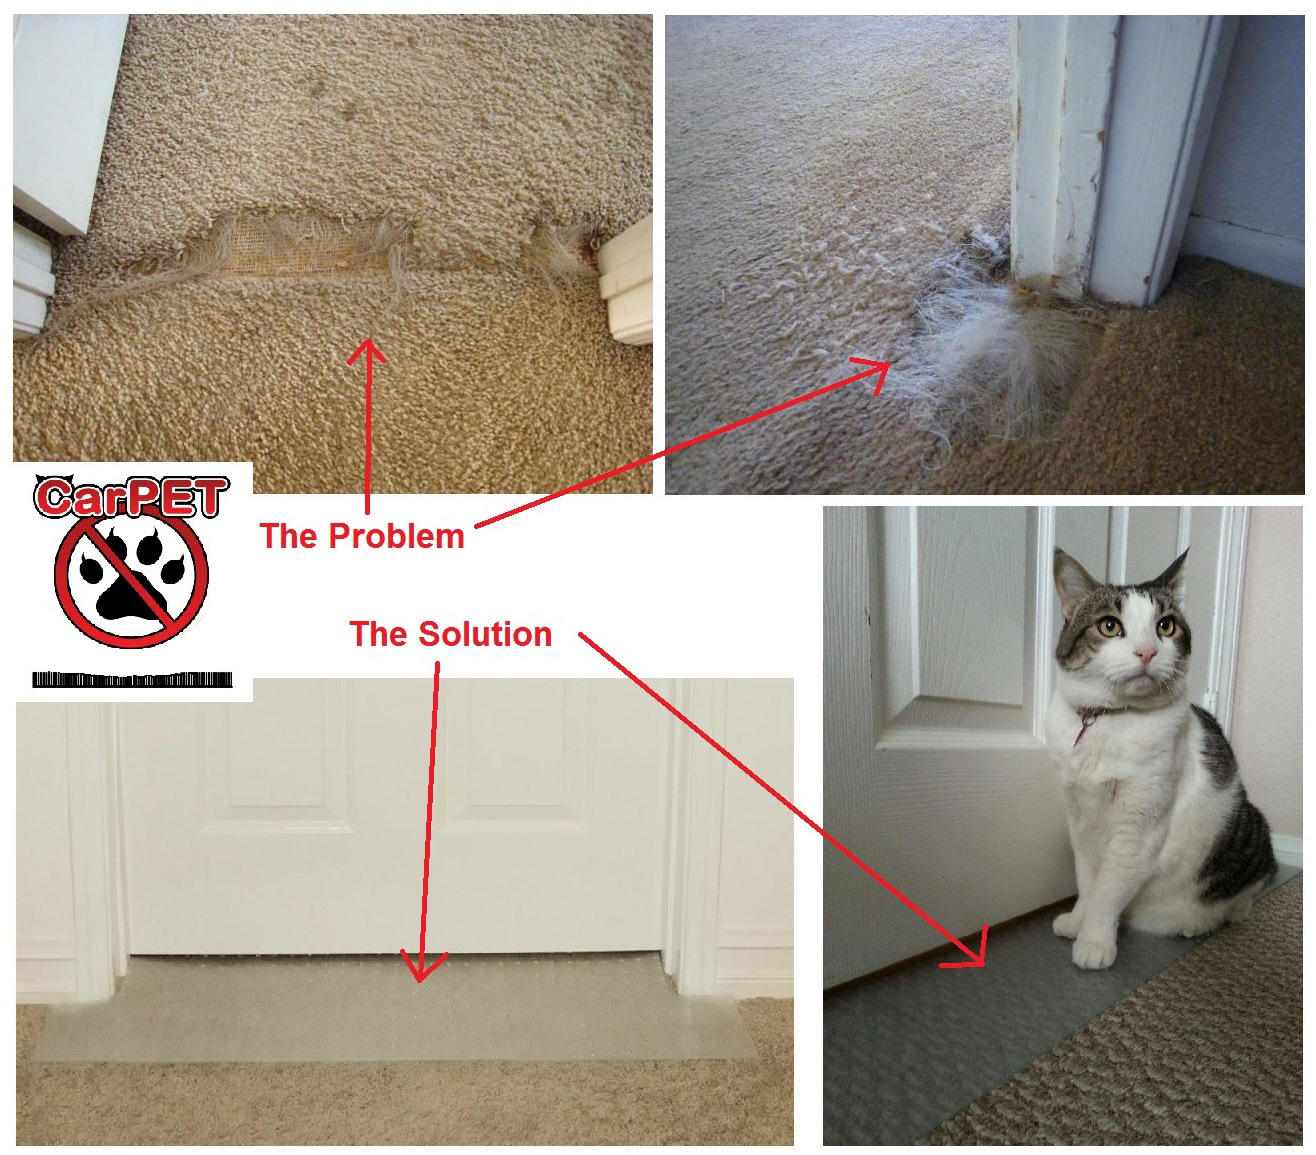 Furniture Guard Self Adhesive Cat Scratch Protector